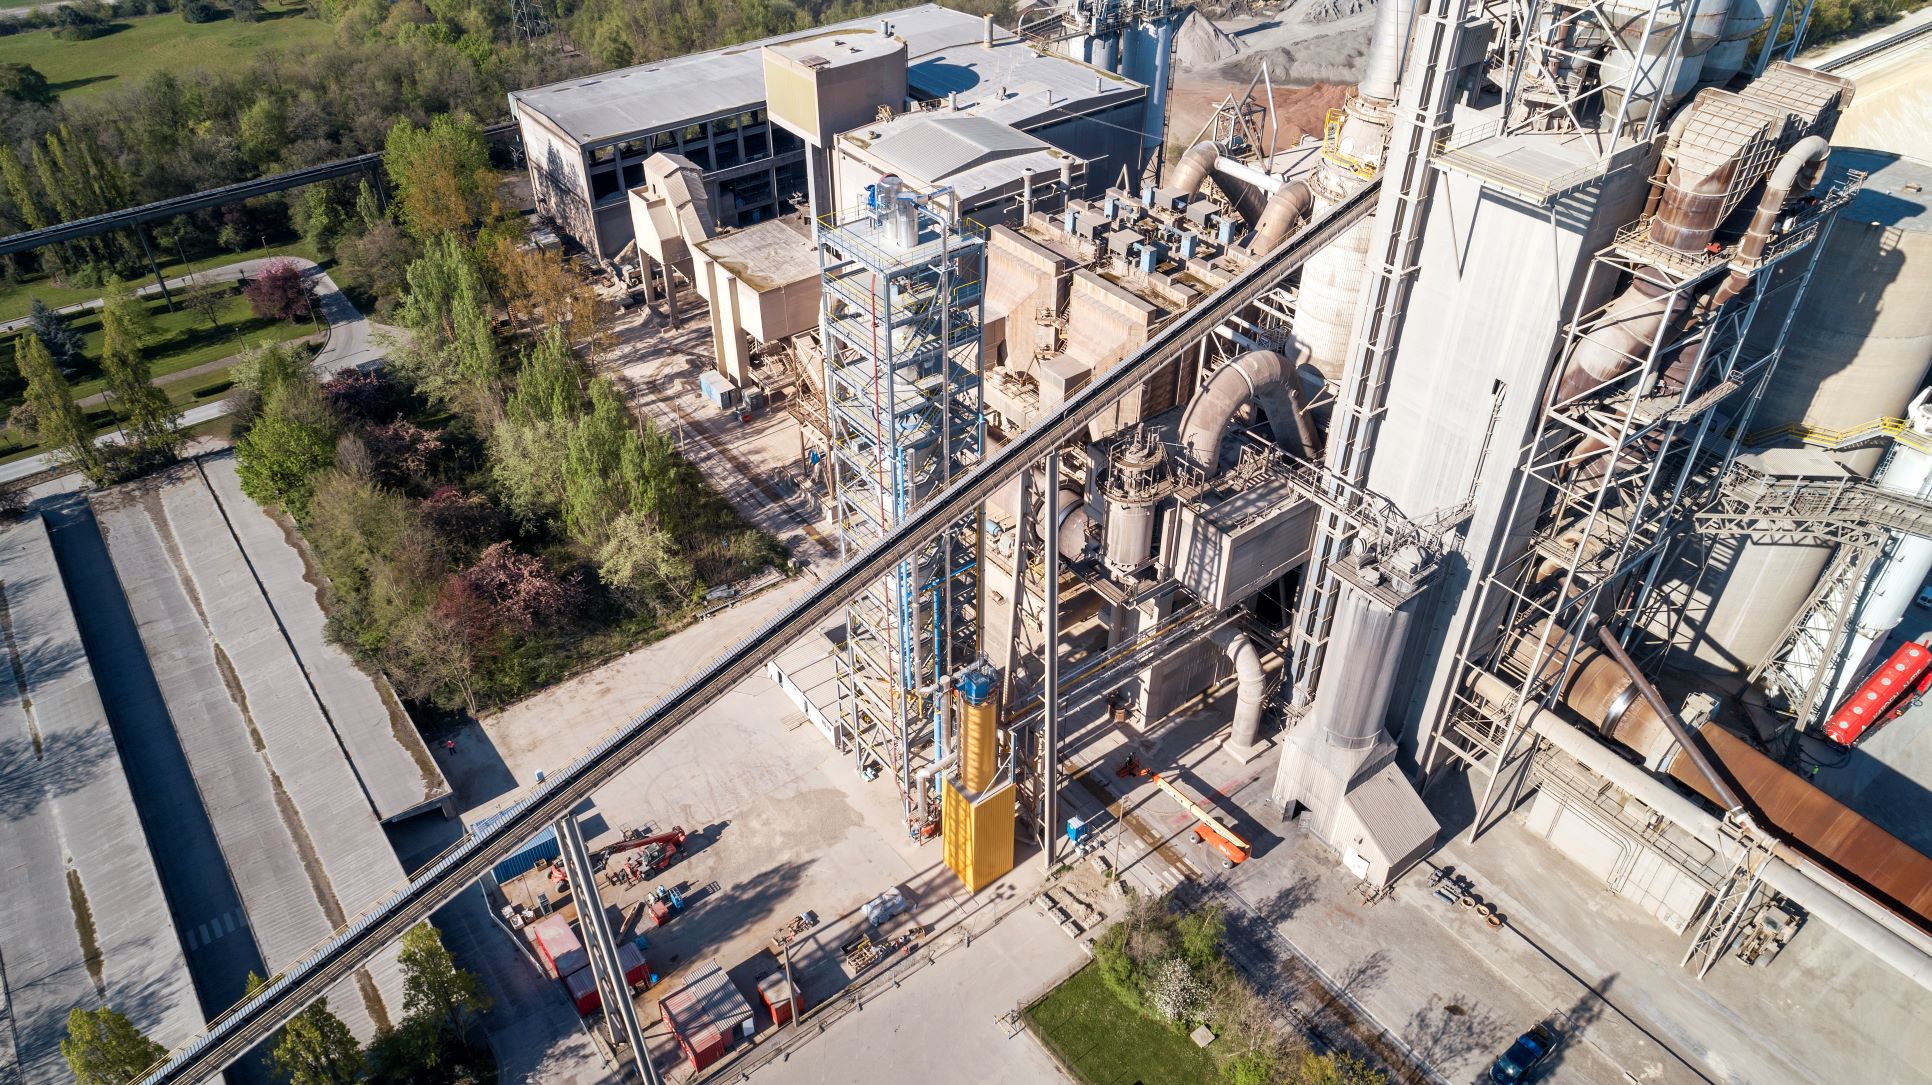 Calix lizenziert emissionsarme Zementtechnologie an deutschen Riesen